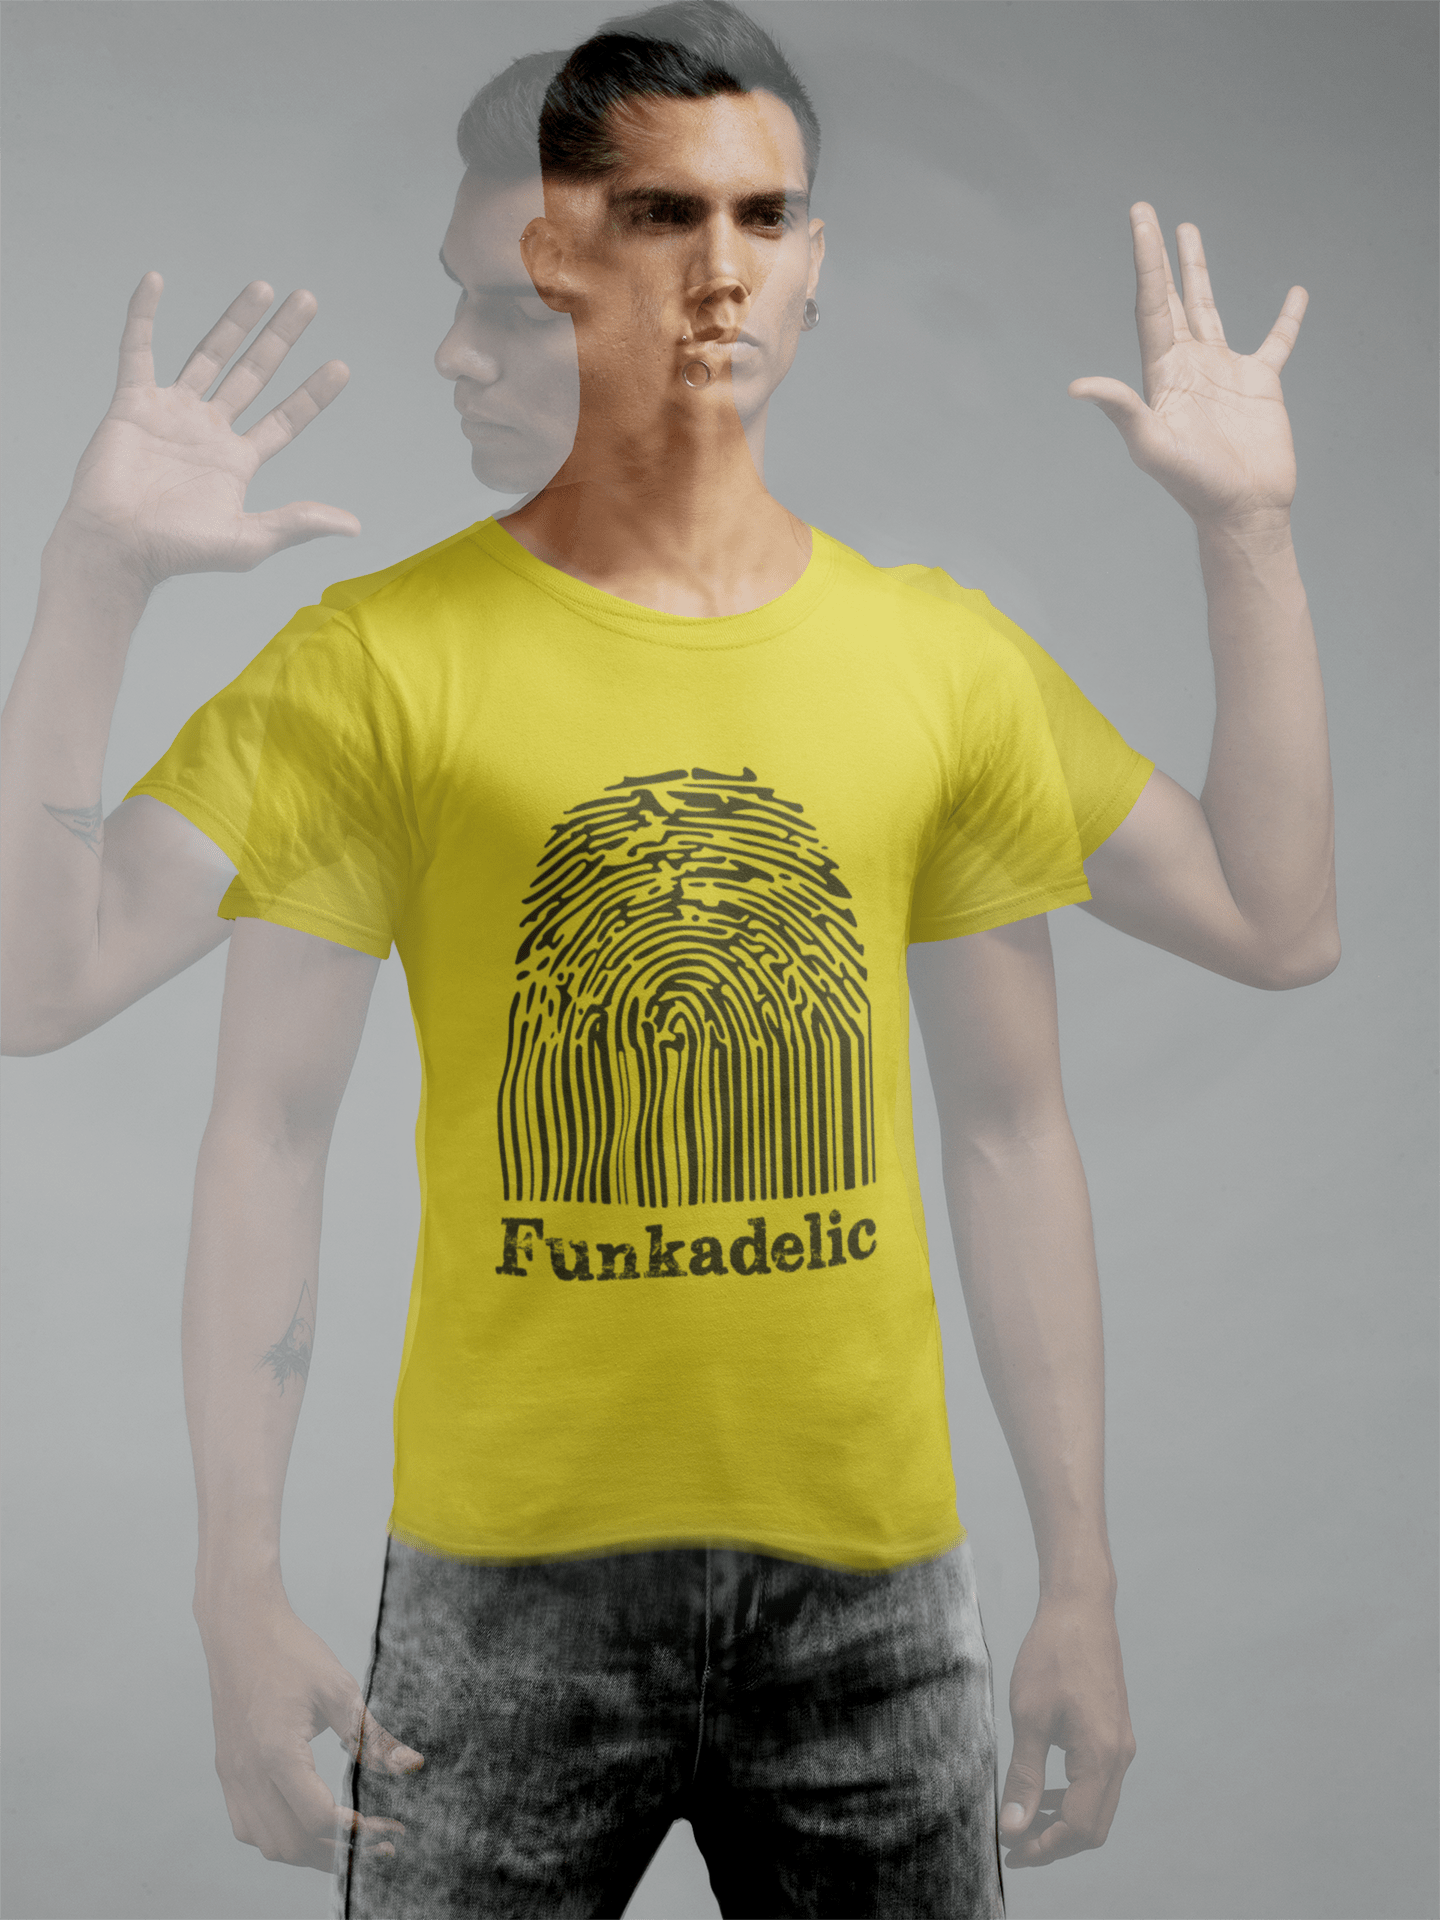 Funkadelic Fingerprint Men's Retro T shirt Lemon Birthday Gift 00314